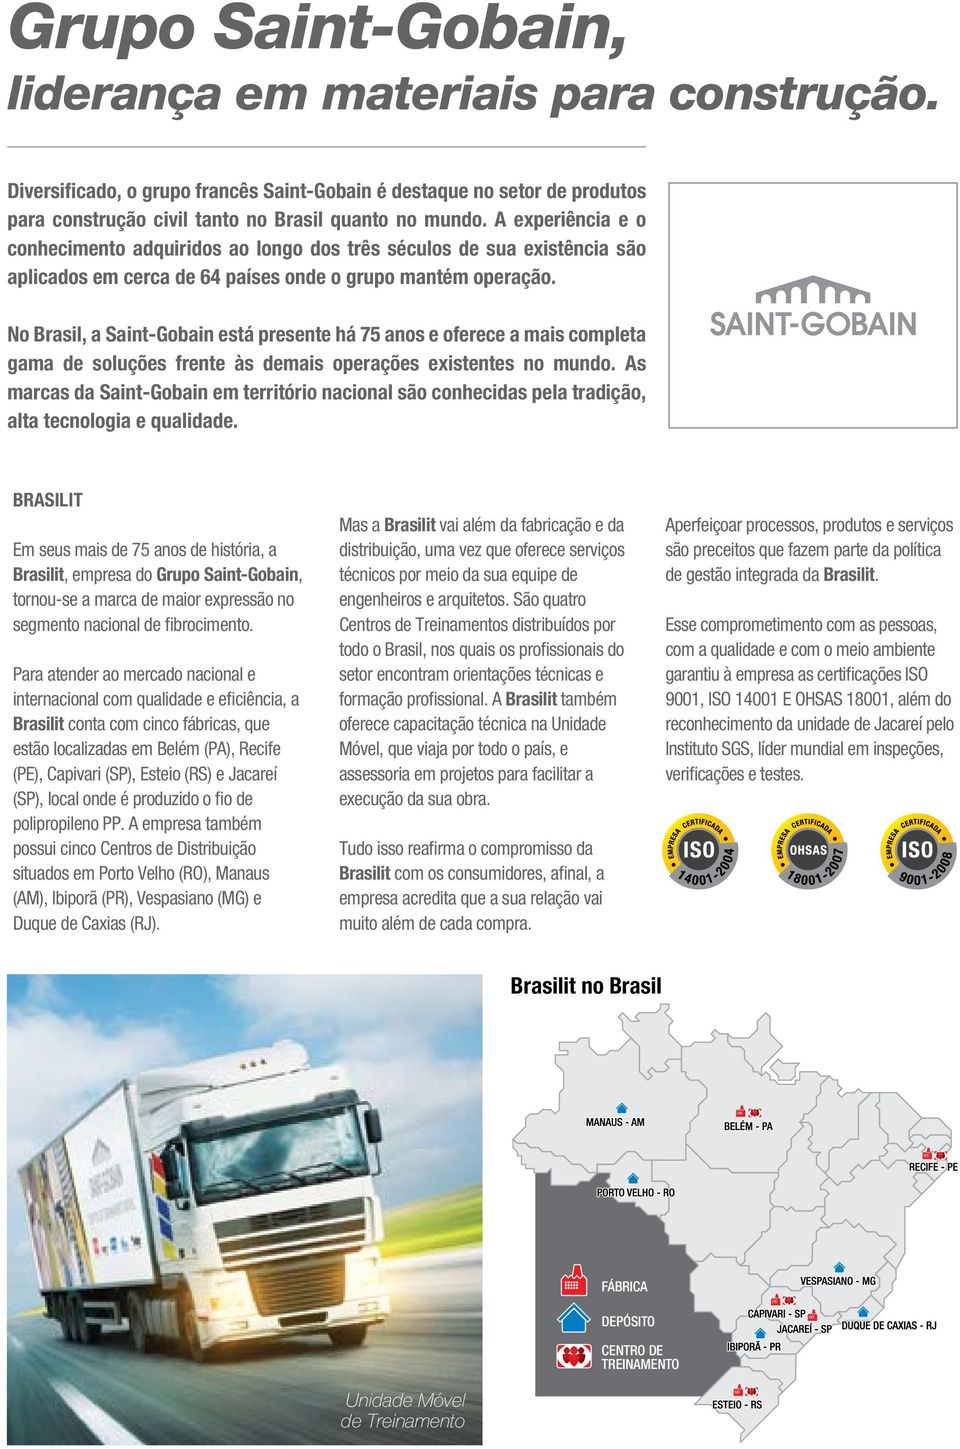 No Brasil, a Saint-Gobain está presente há 75 anos e oferece a mais completa gama de soluções frente às demais operações existentes no mundo.